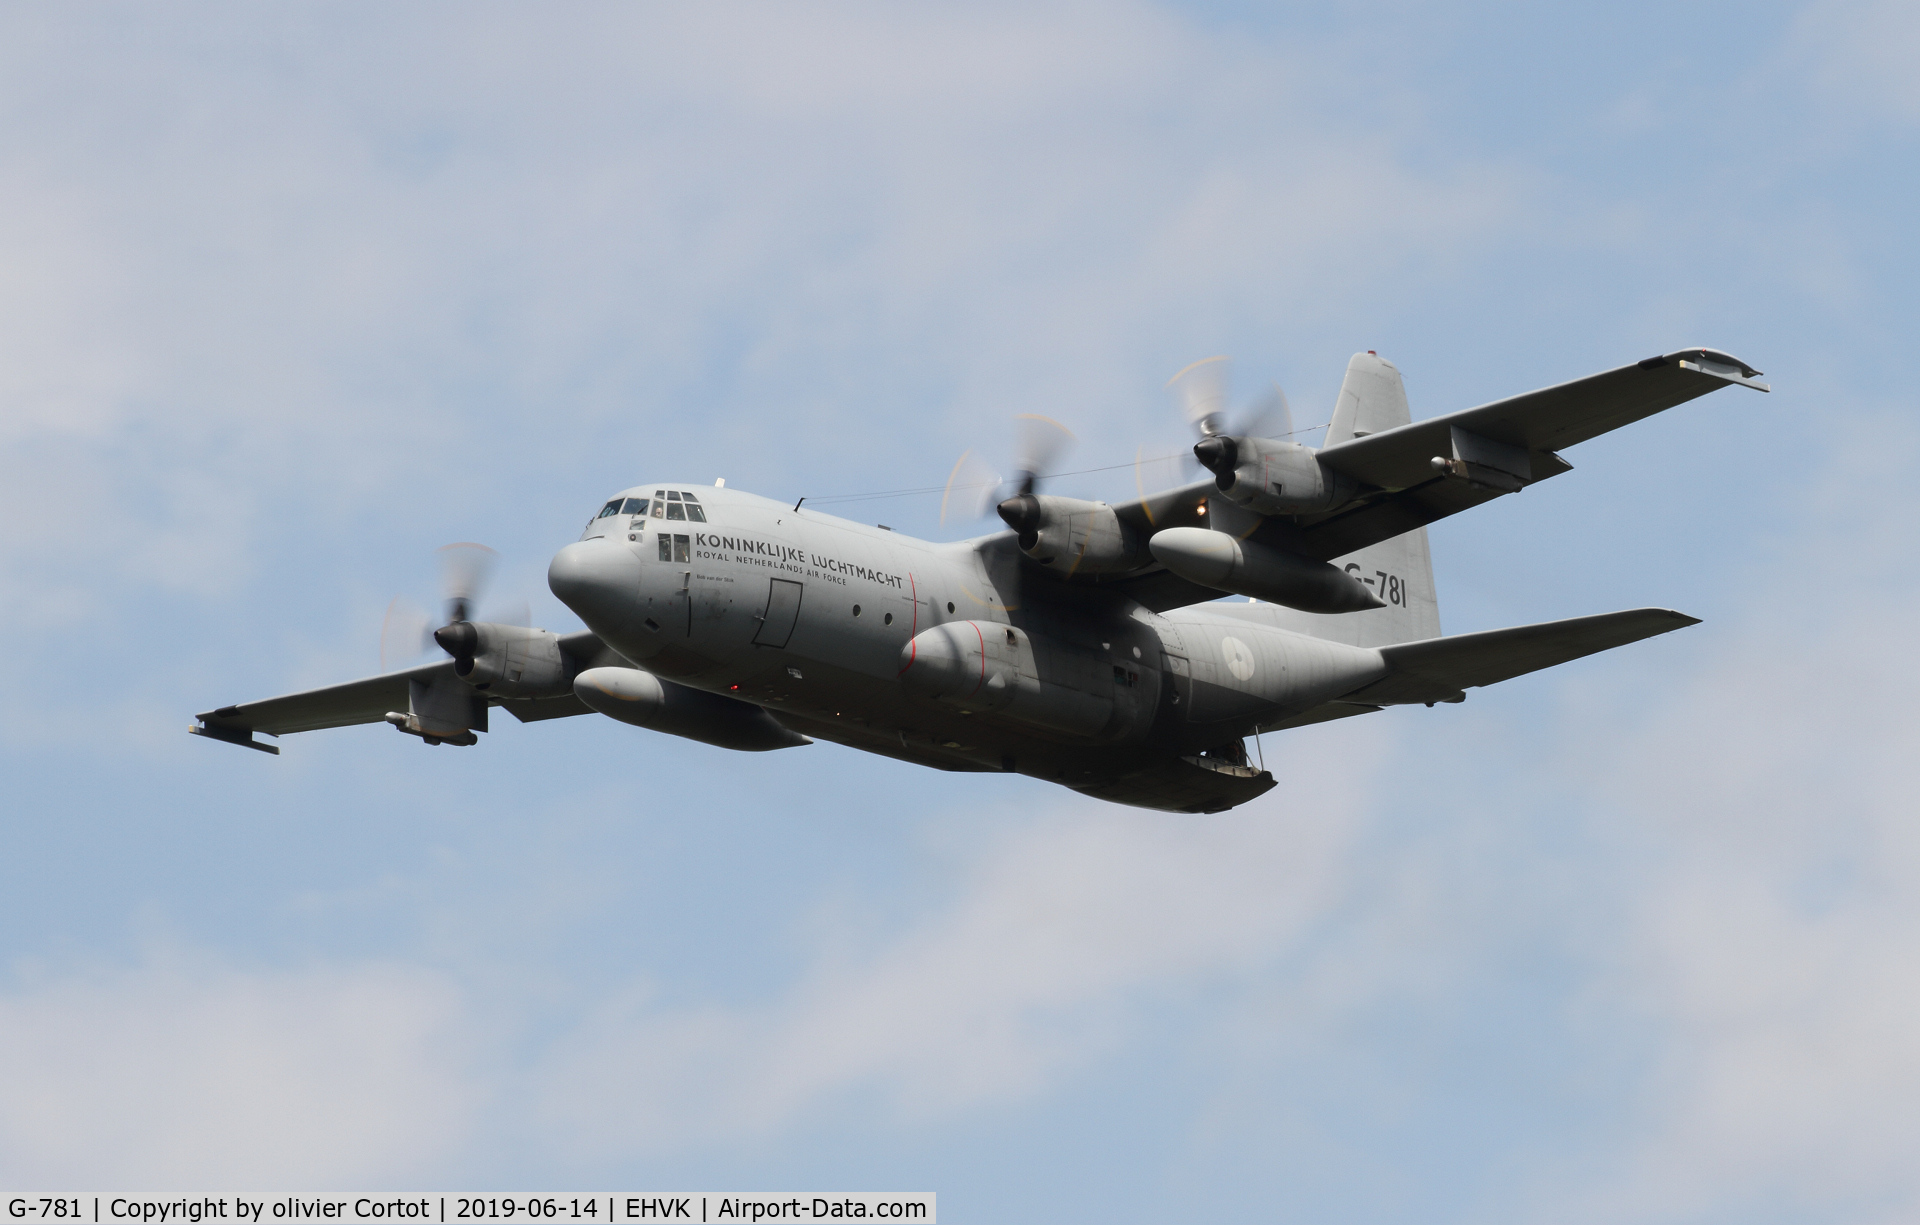 G-781, Lockheed C-130H Hercules C/N 382-4781, 2019 airshow